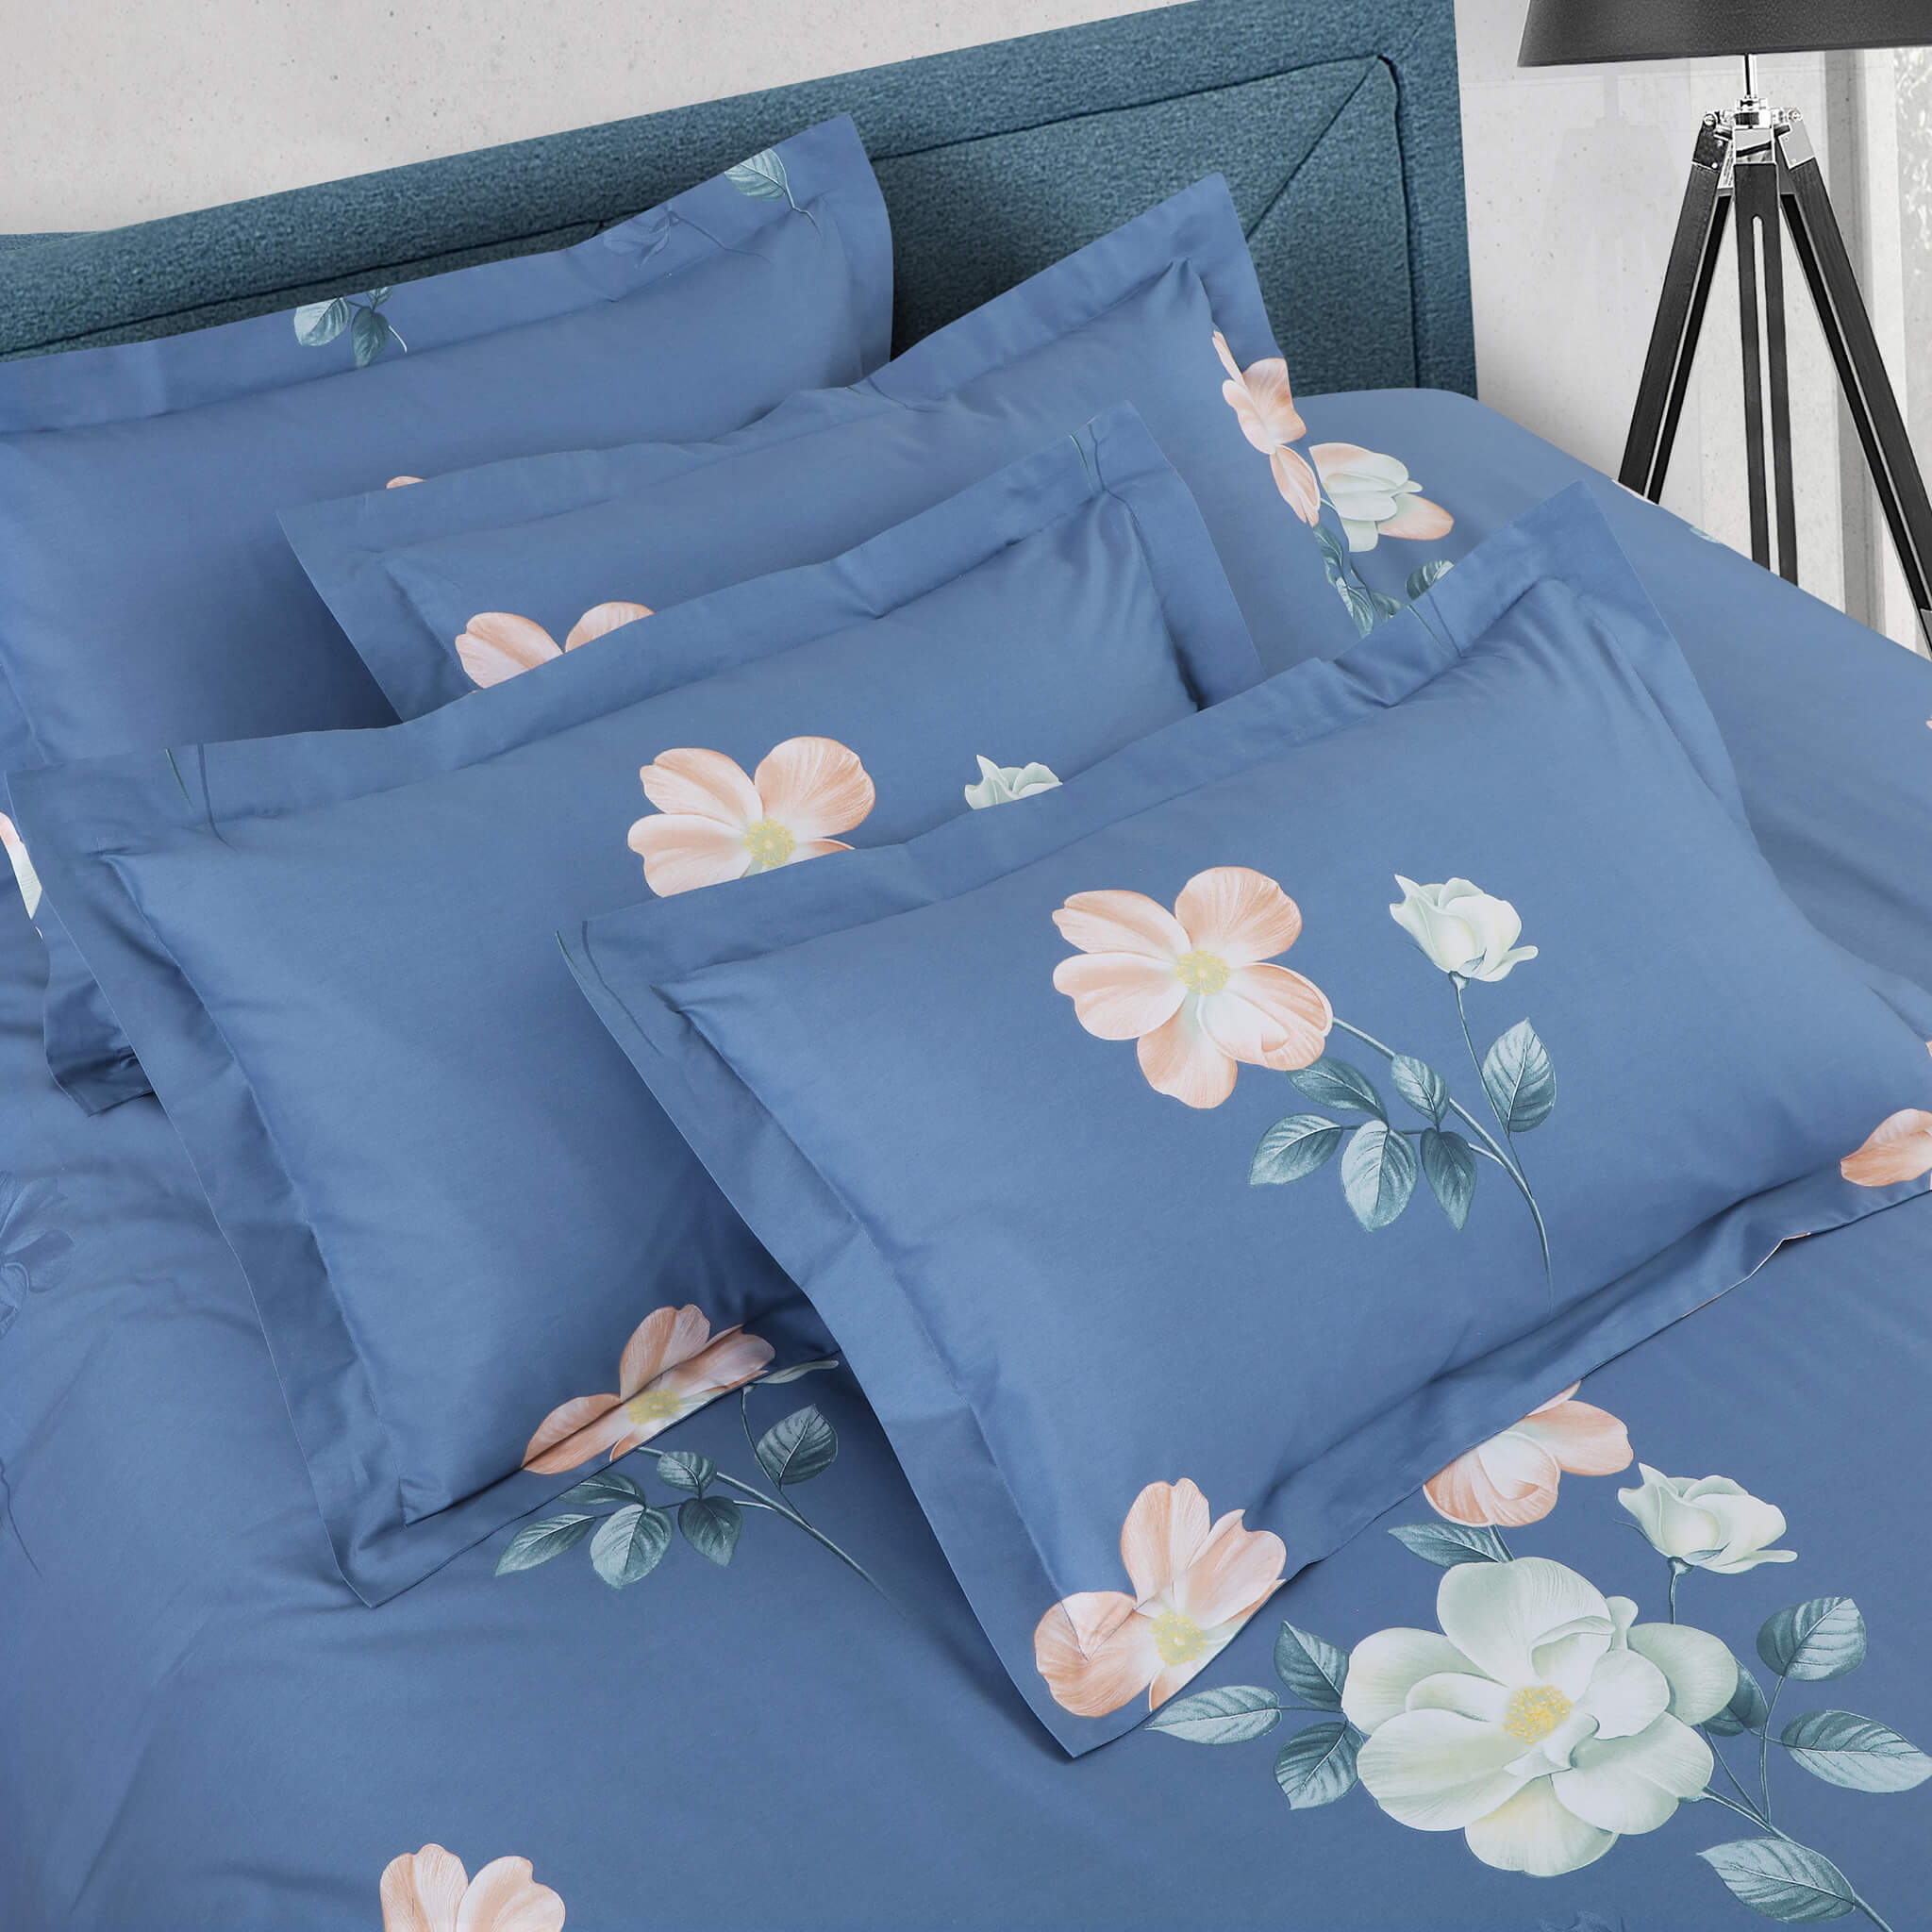 floral comforter sets